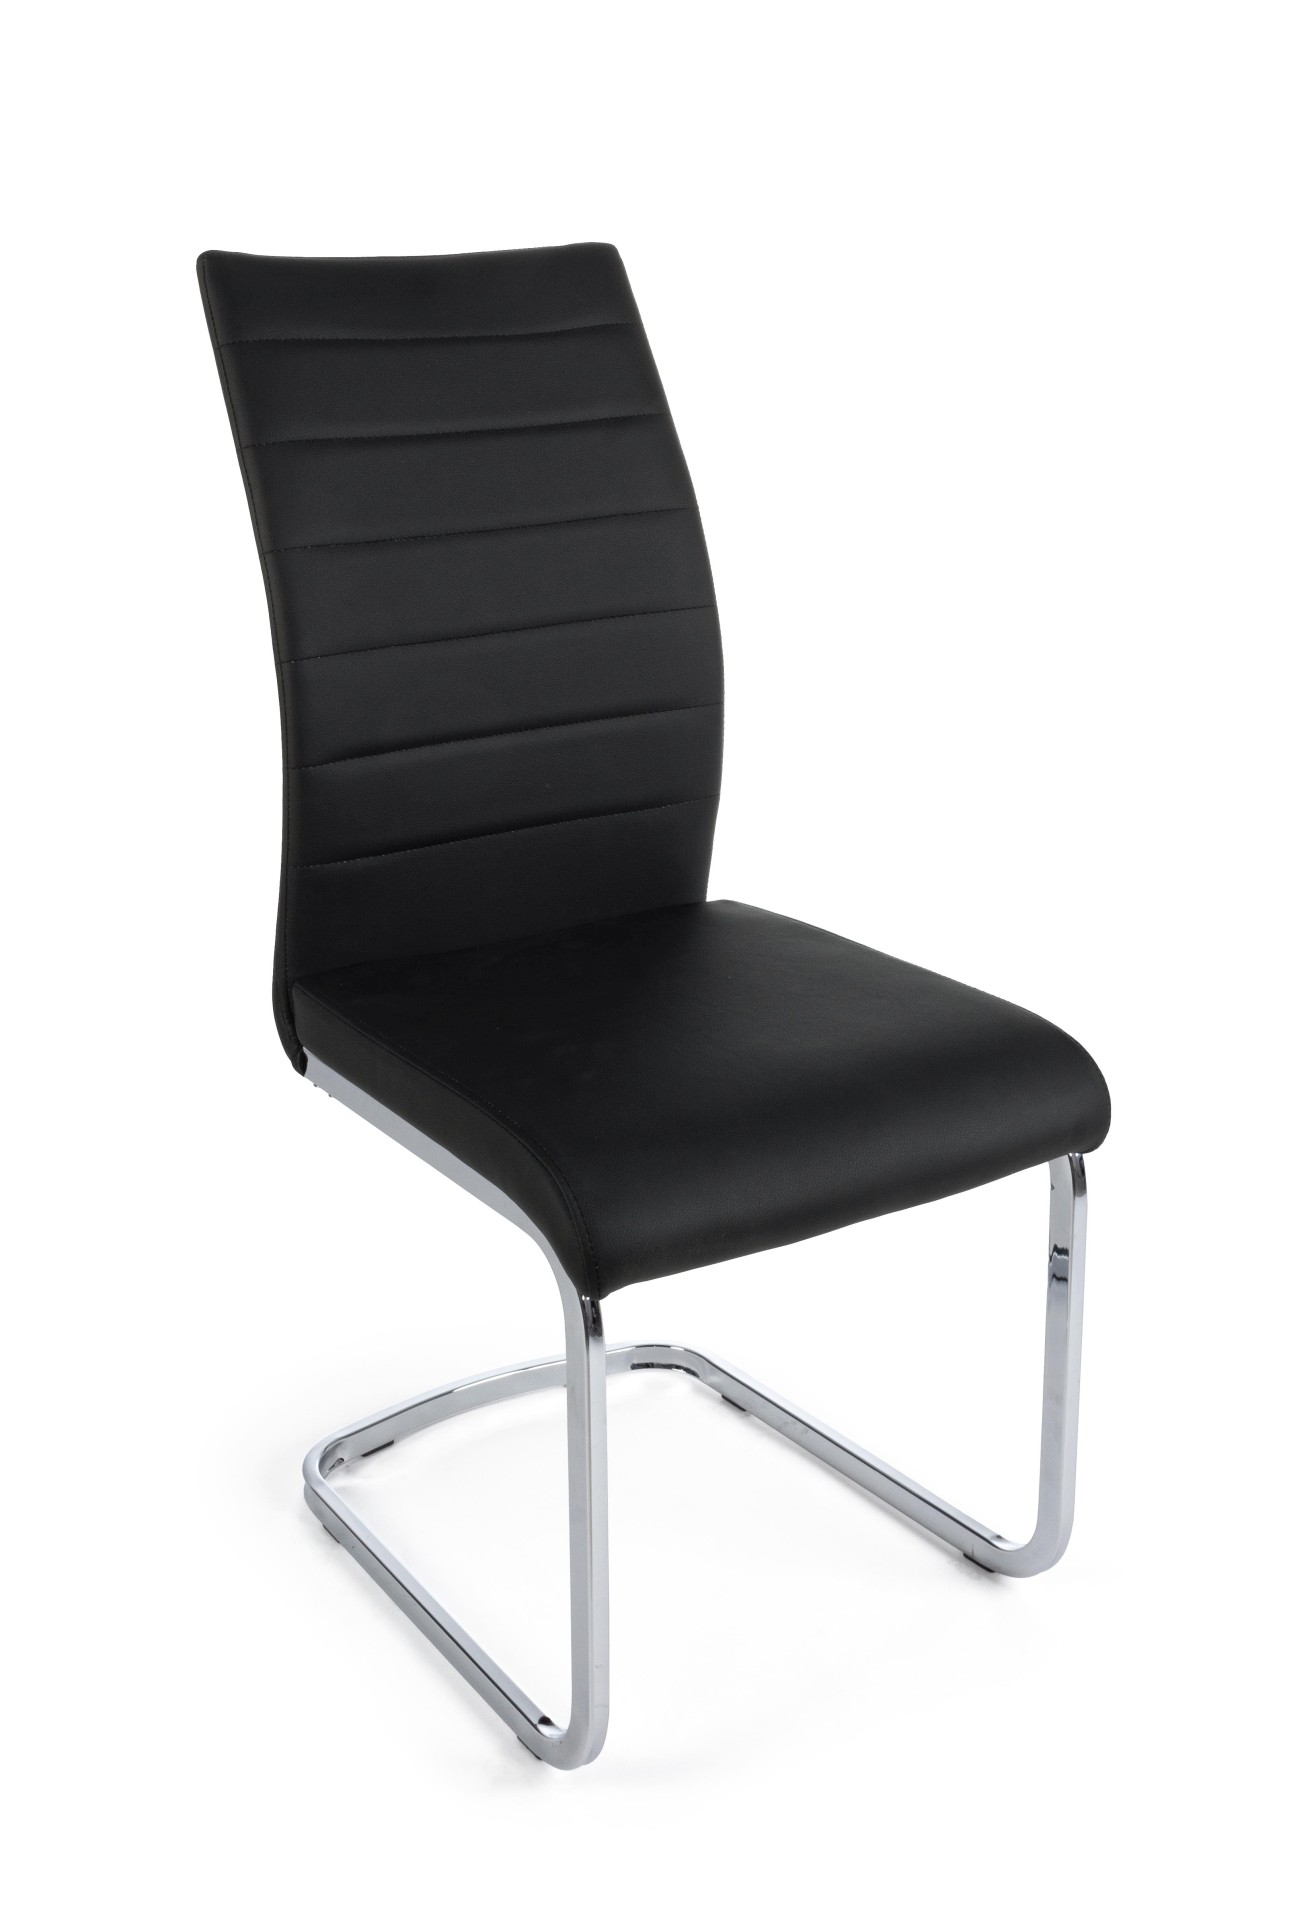 Der Stuhl Mayra überzeugt mit seinem modernem Design. Gefertigt wurde der Stuhl aus einem Kunststoff-Bezug, welcher einen schwarzen Farbton besitzt. Das Gestell ist aus Metall, welches eine Silberne Farbe hat. Die Sitzhöhe beträgt 47 cm.